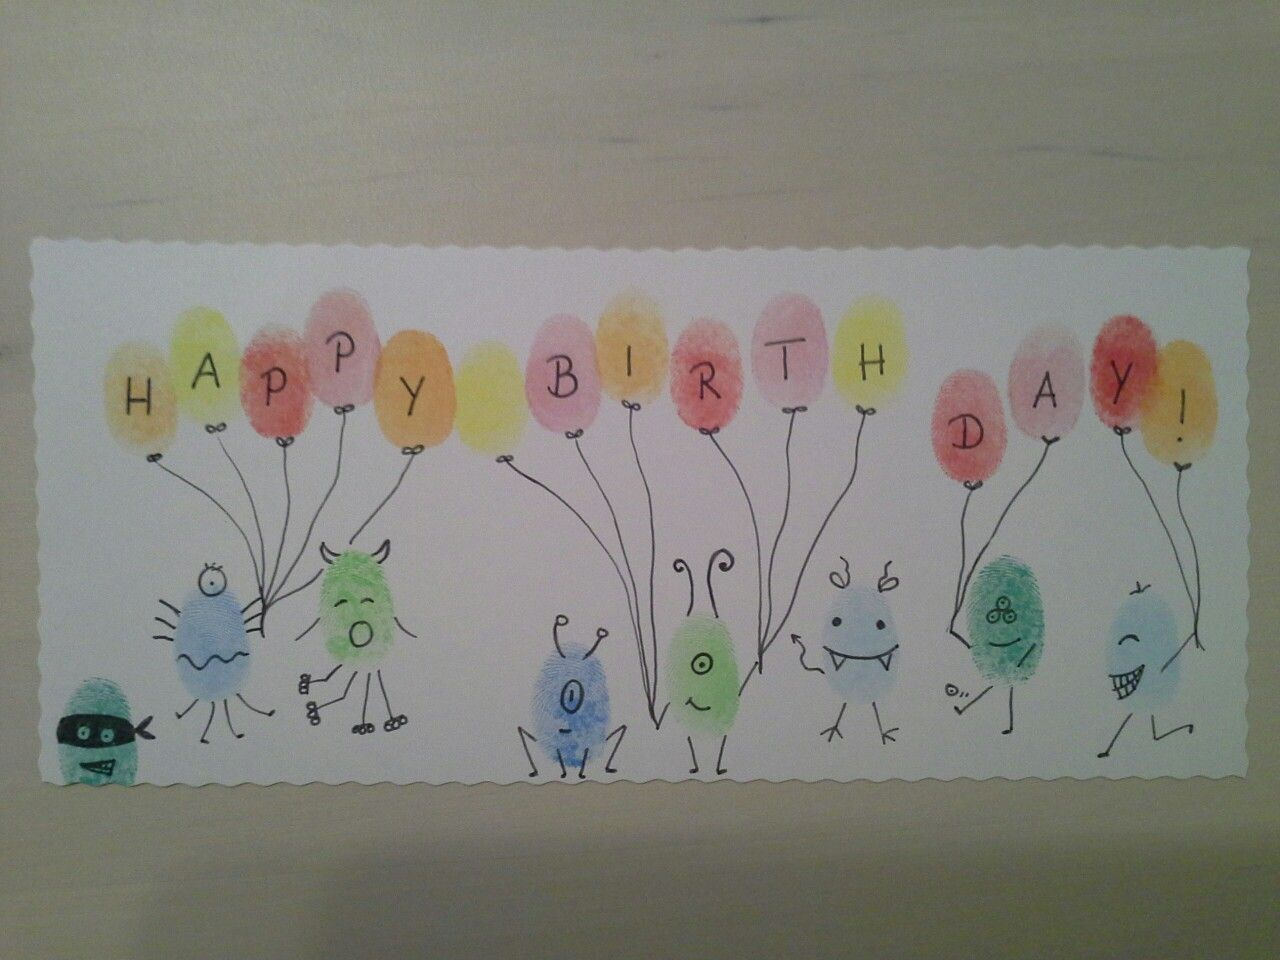 Fingerstempeln Geburtstagskarte Fingerprints Happy Birthday Card über Fingerabdrücke Kinder Bilder